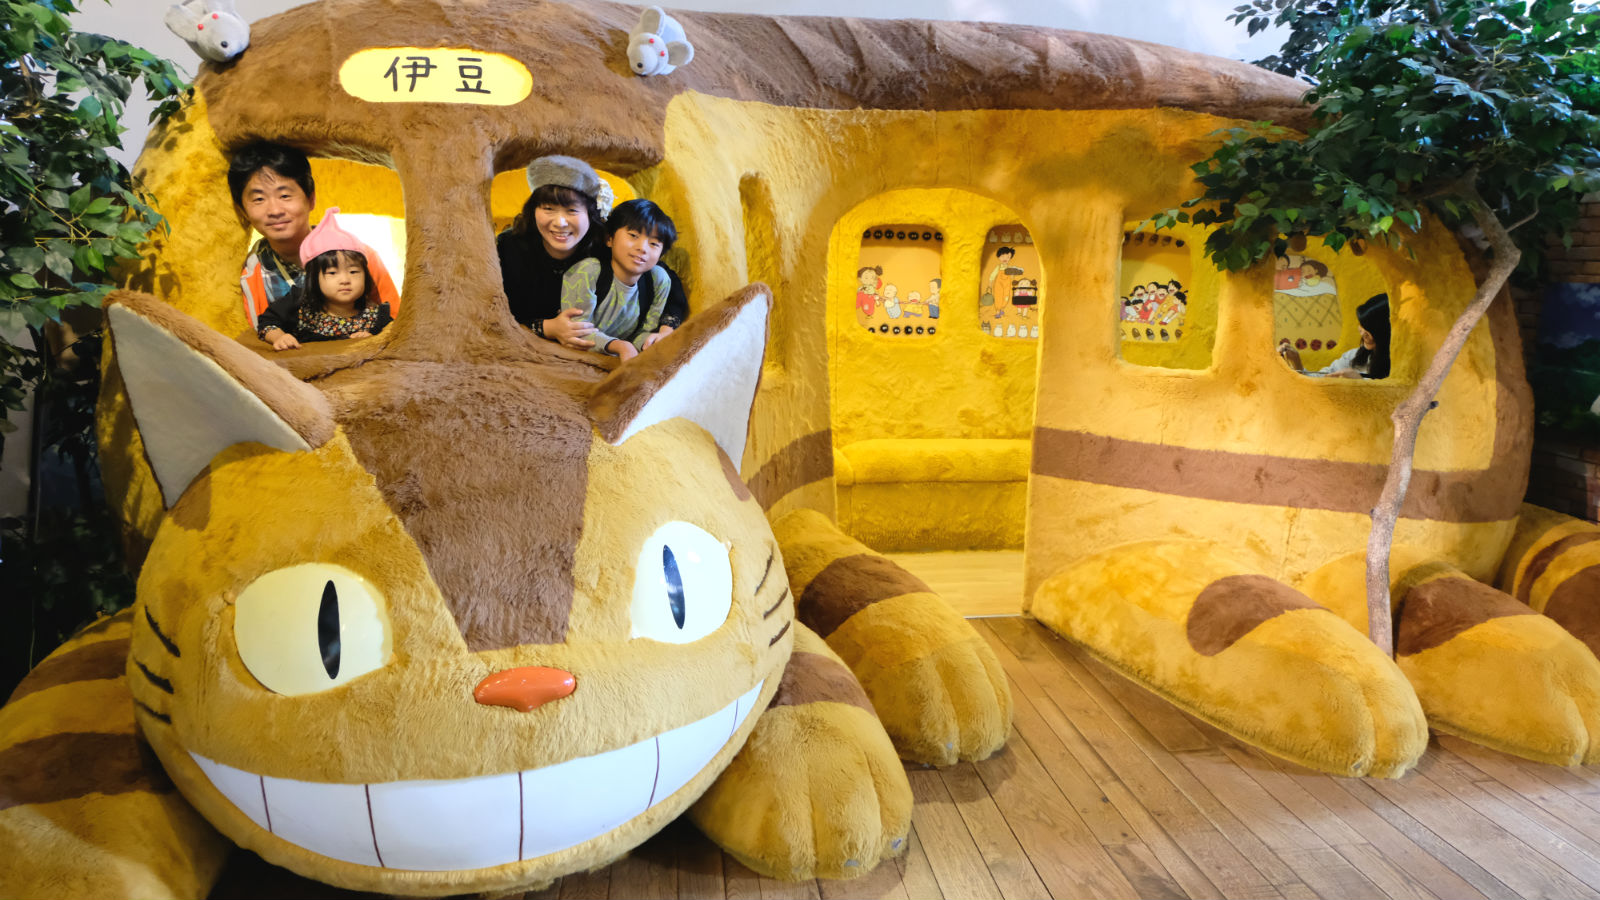 伊豆テディベアミュージアム「トトロのぬいぐるみ展」でネコバス体験 | ぎゅってWeb